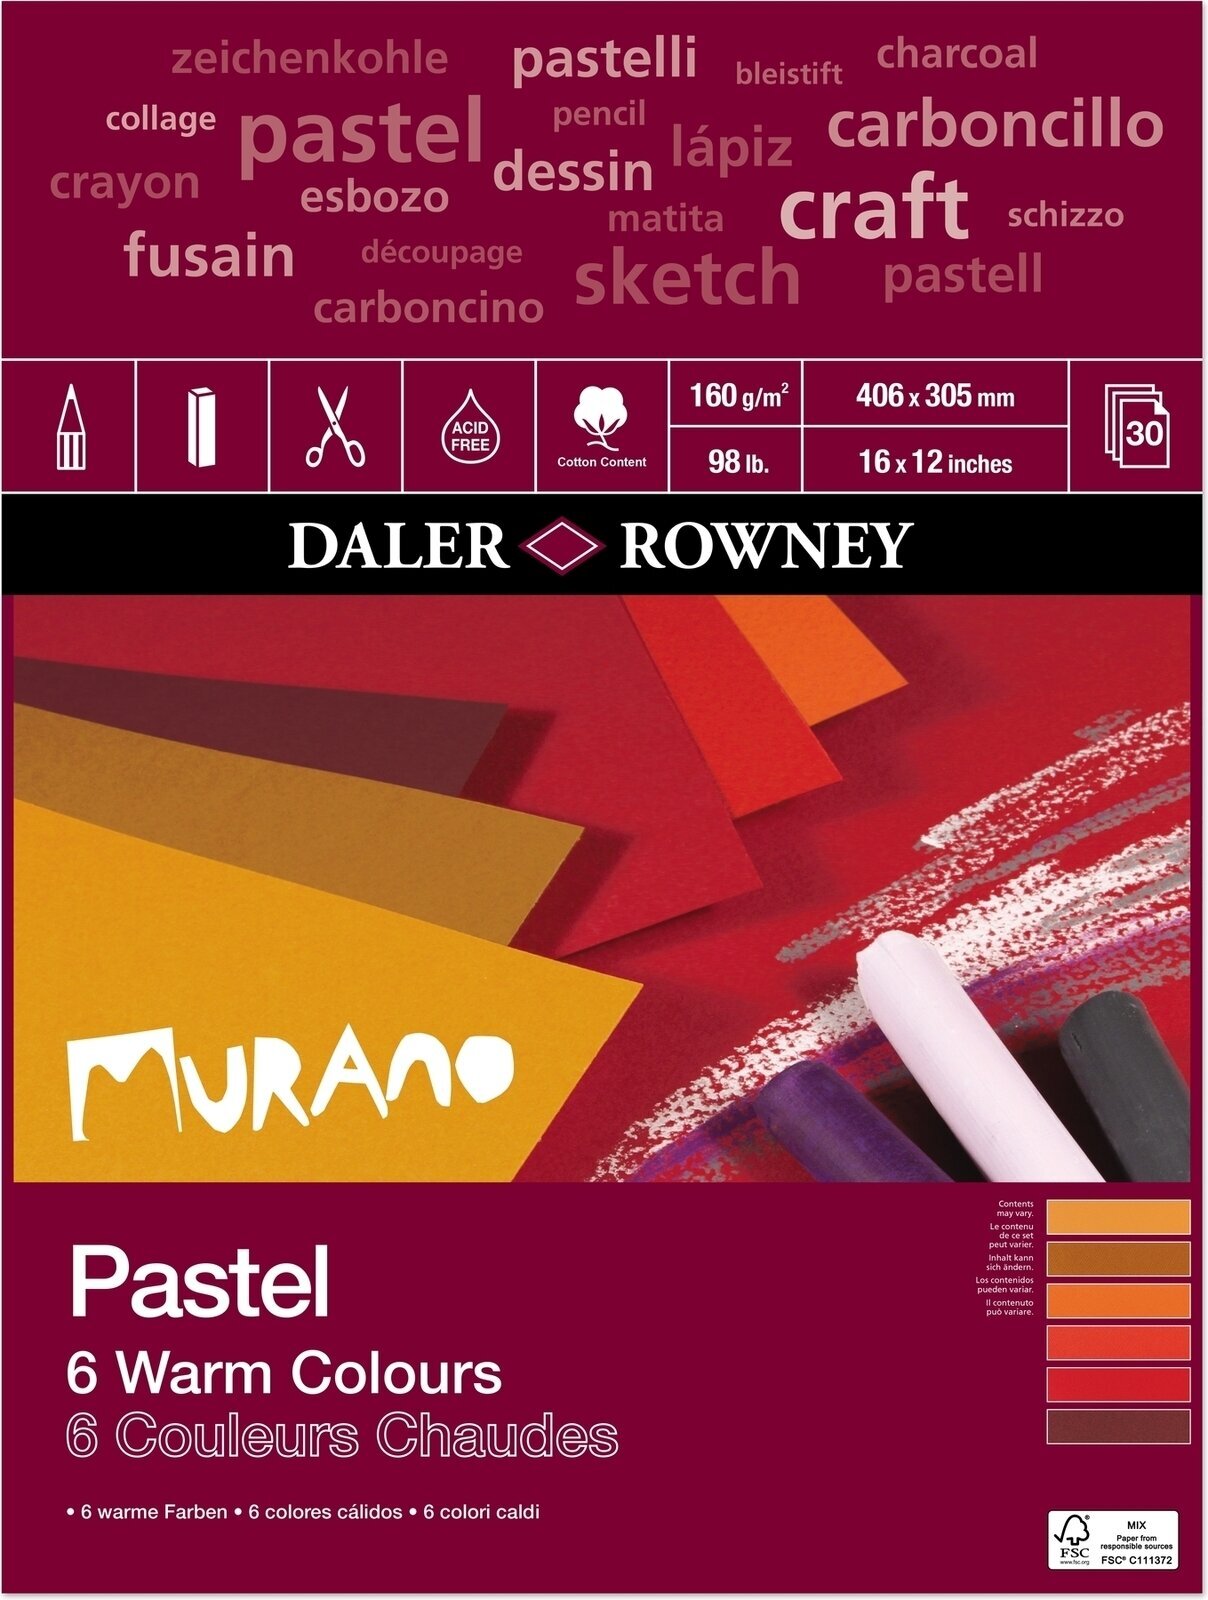 Bloc de dibujo Daler Rowney Murano Pastel Paper 40,6 x 30,5 cm 160 g Warm Colours Bloc de dibujo